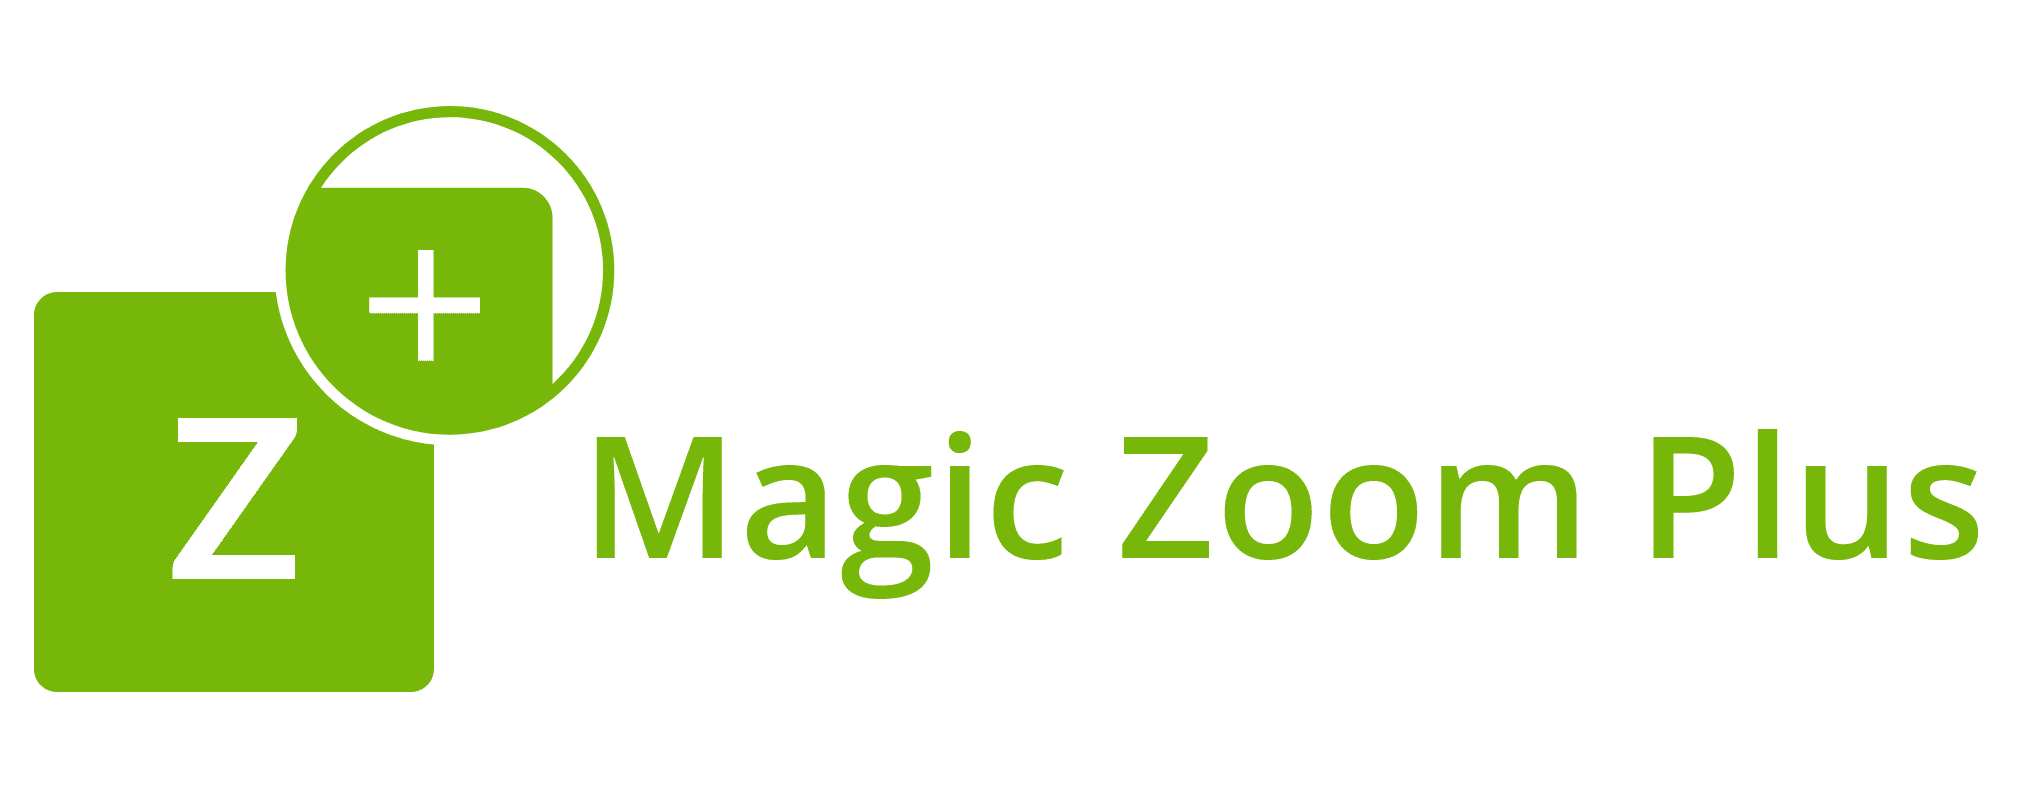 magic zoom plus logo